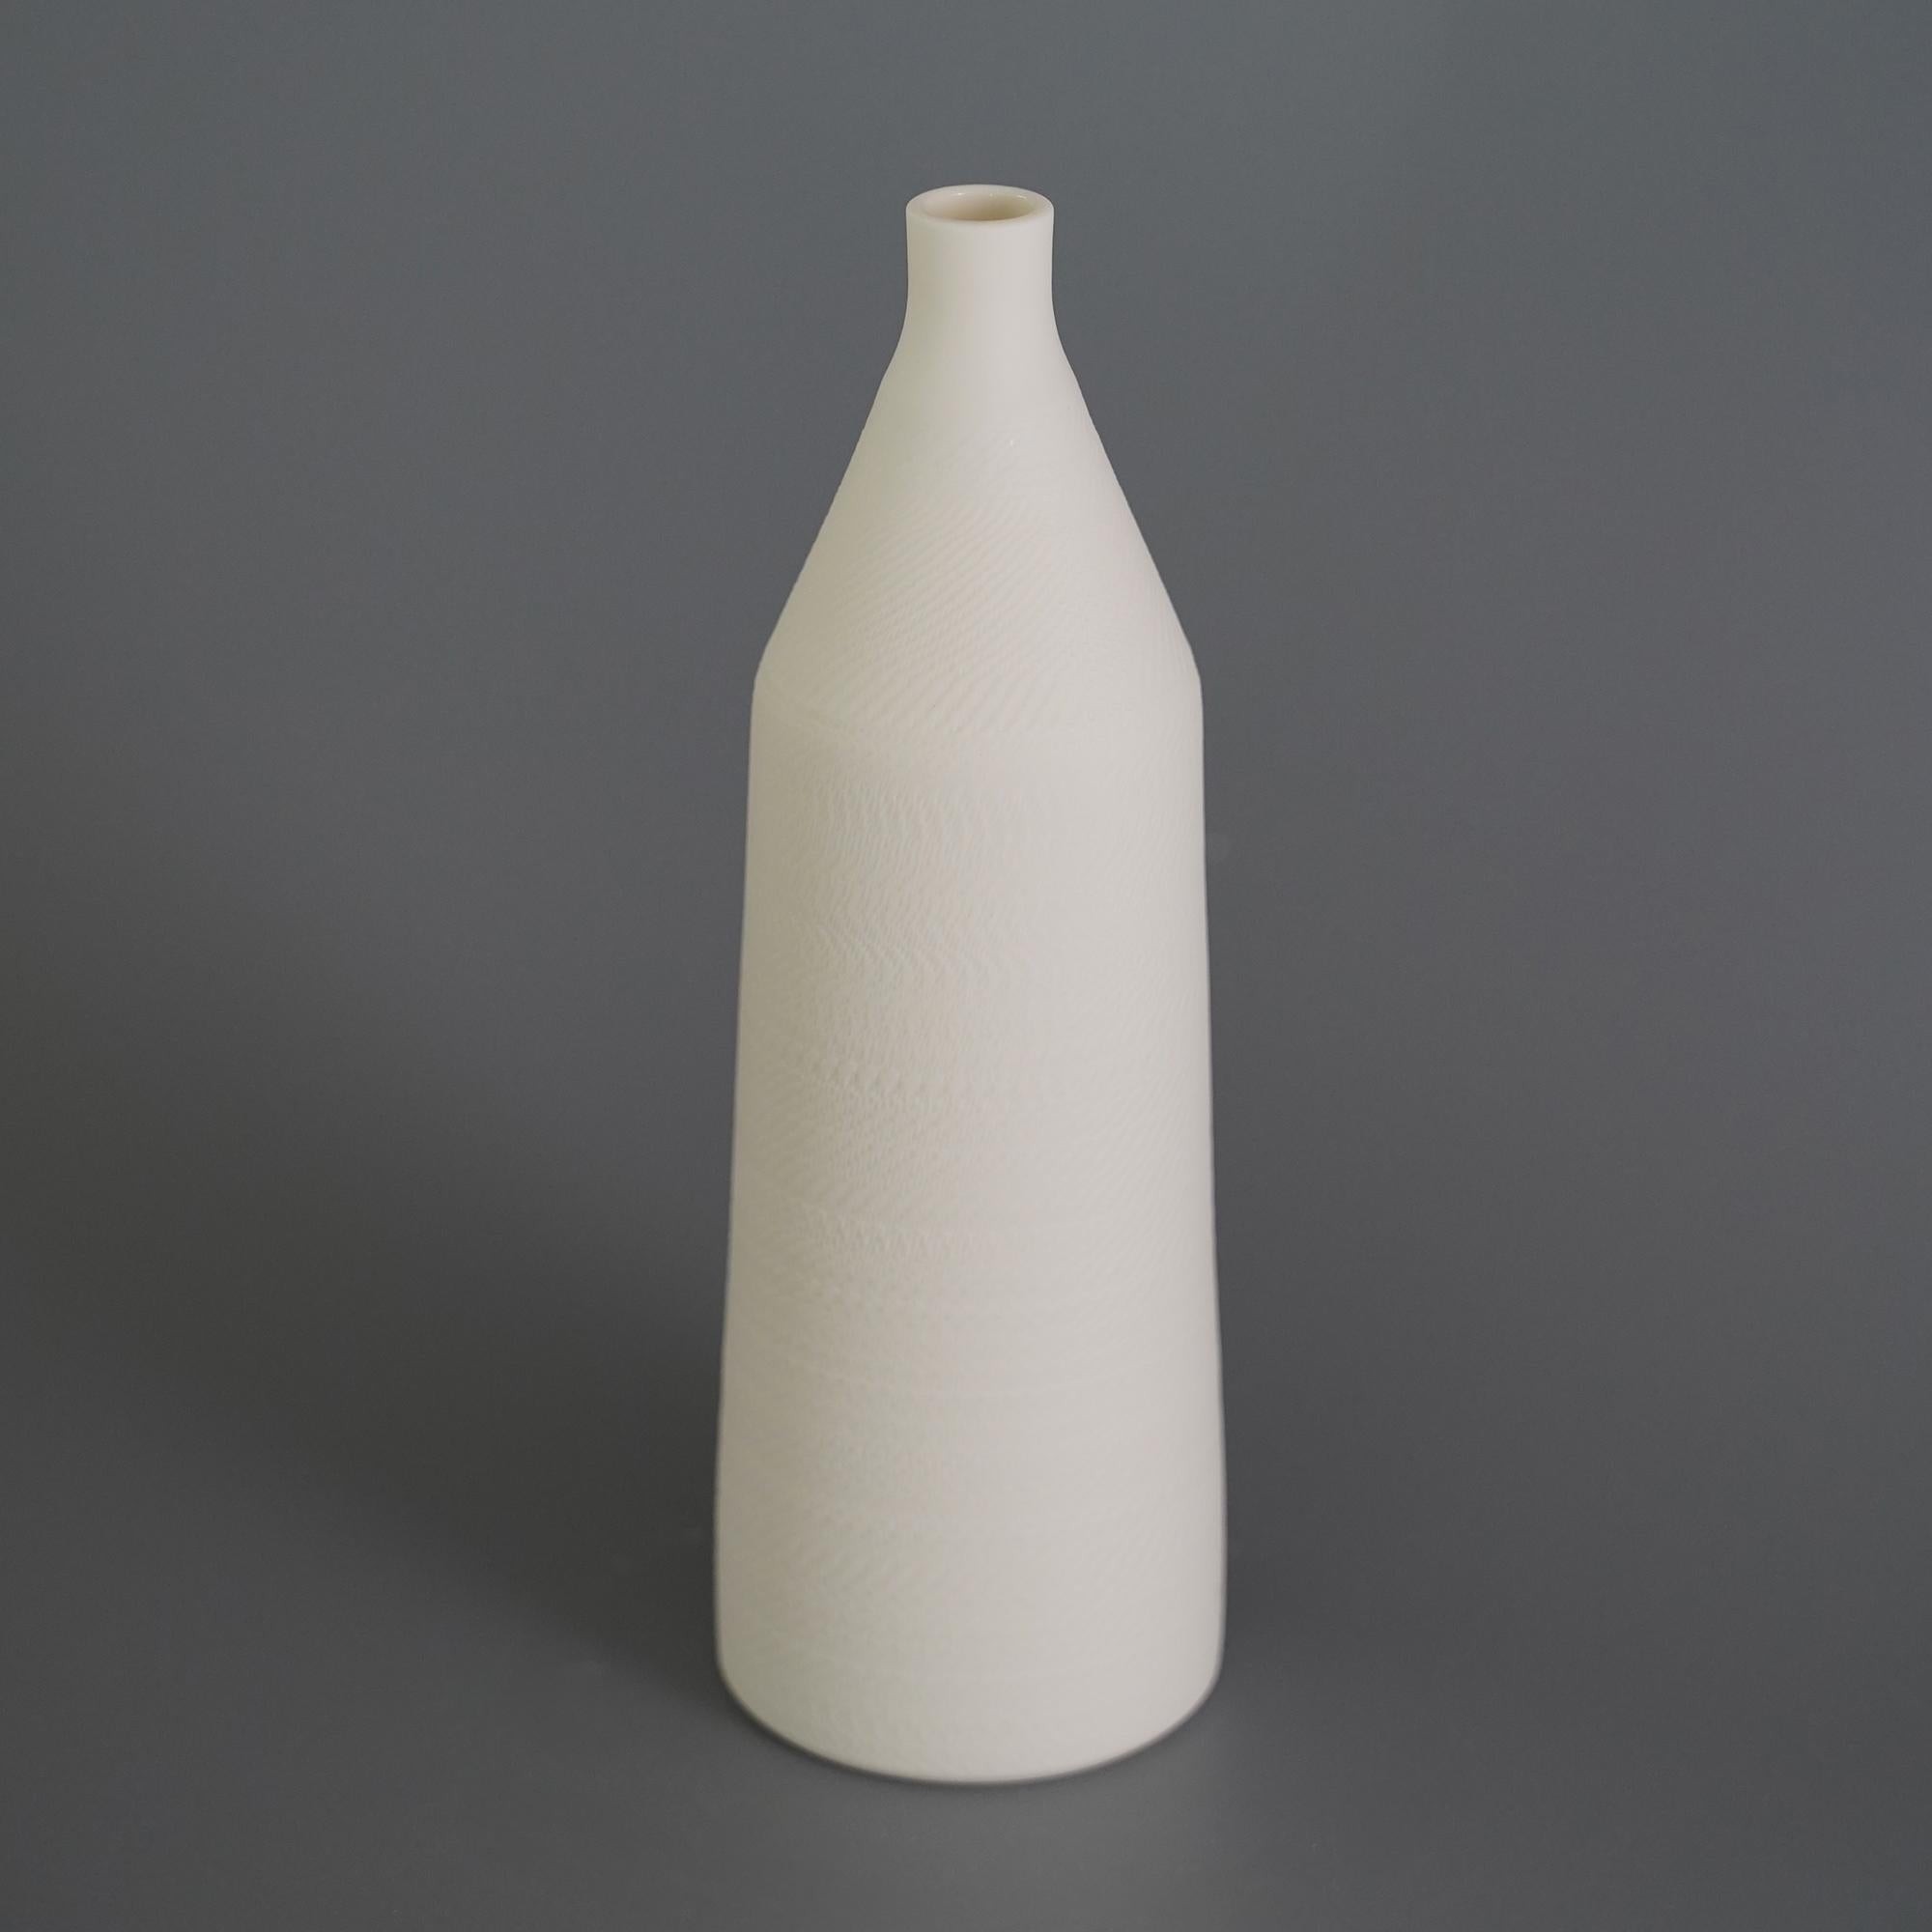 Lot de 2 vases Helice par Studio Cúze
Dimensions : L 7 x H 21,5 cm
Matériaux : céramique

Ce vase fait à la main présente une surface finement structurée et est fini avec une peinture blanche. Grâce à la fonction loupe, vous pouvez voir les fins